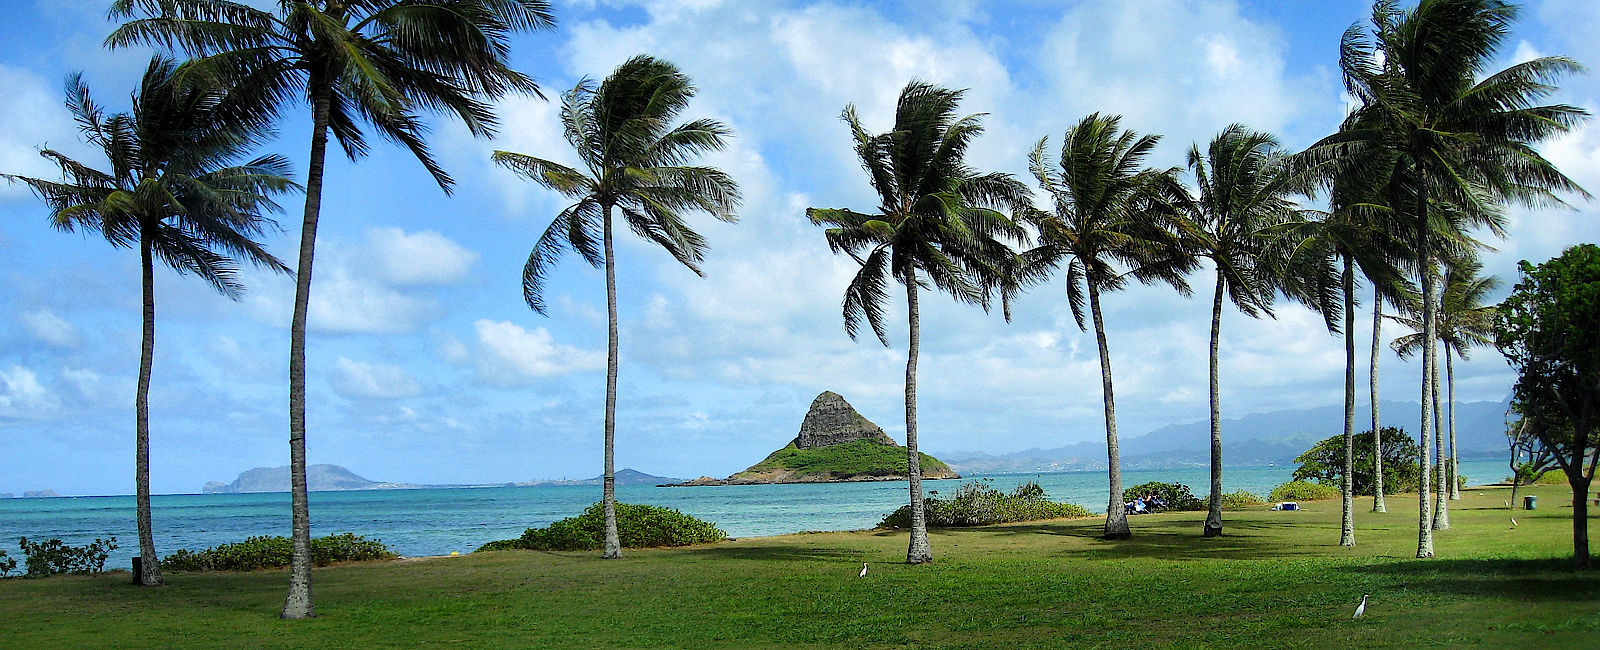 HAWAII
 Hawaii Reisen - Eine Traumreise auf die Aloha-Inseln 